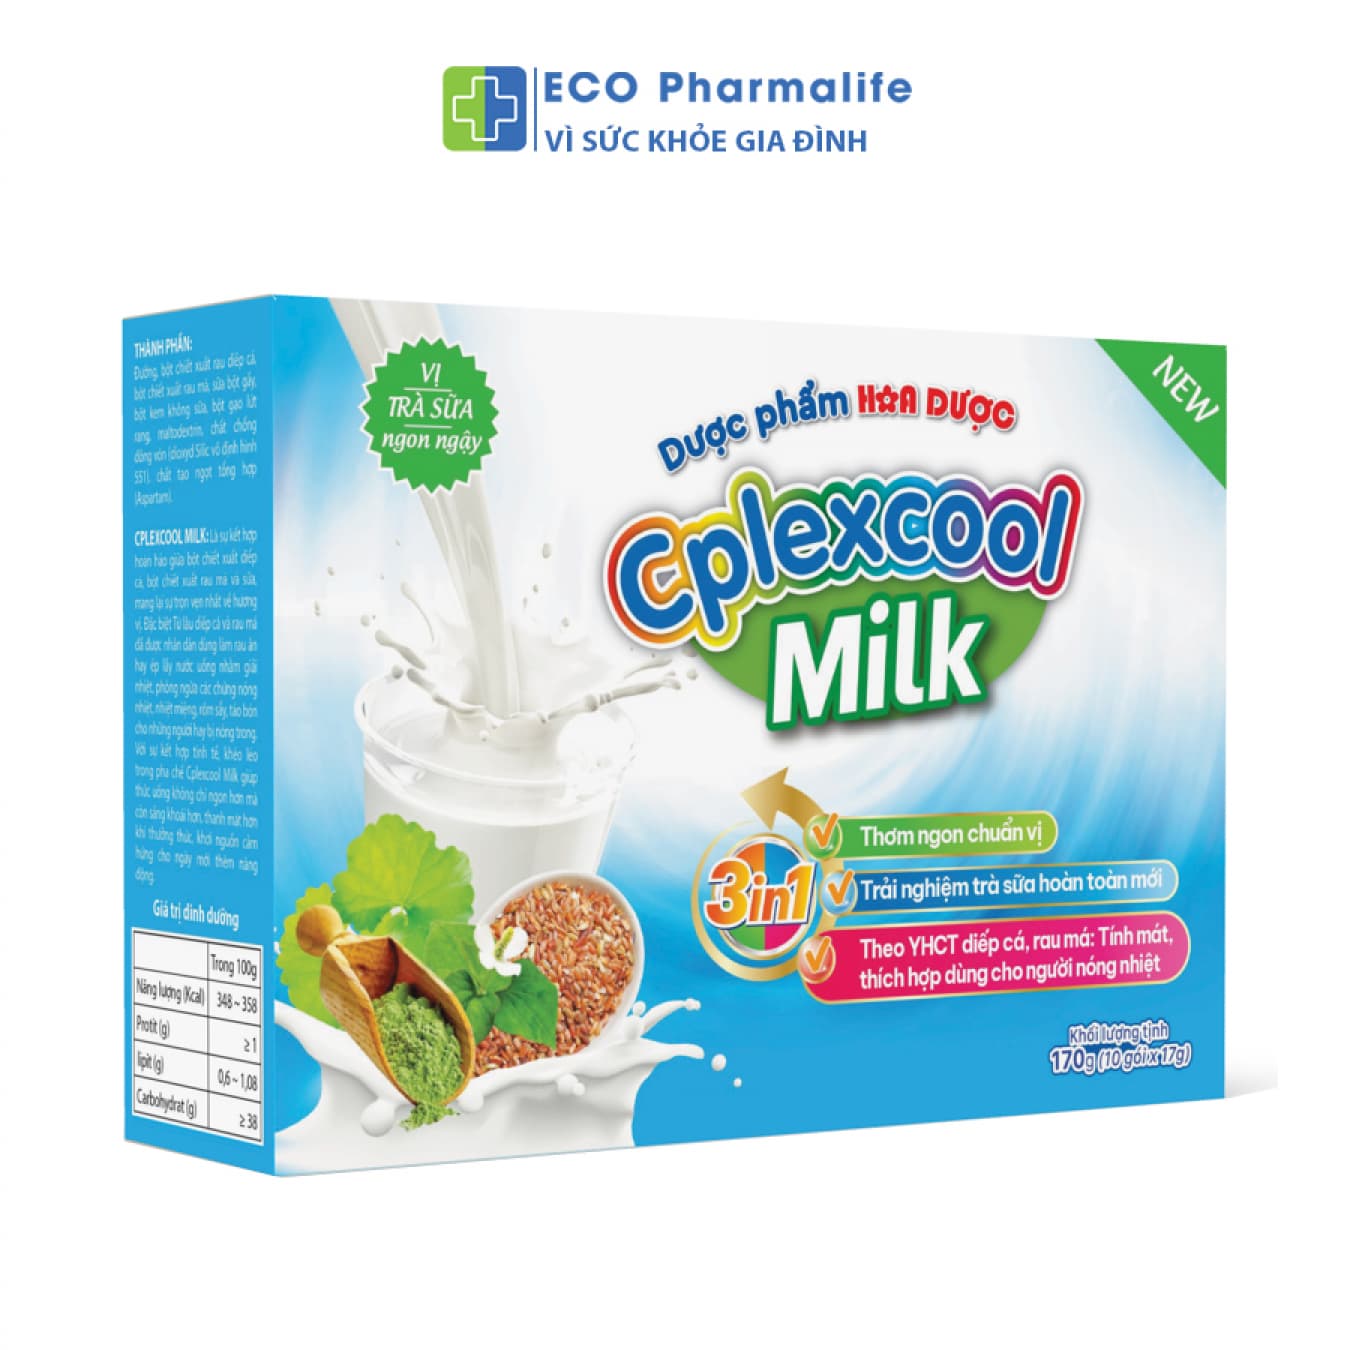 Cplexcool Milk - thức uống giải nhiệt cơ thể đặc biệt.